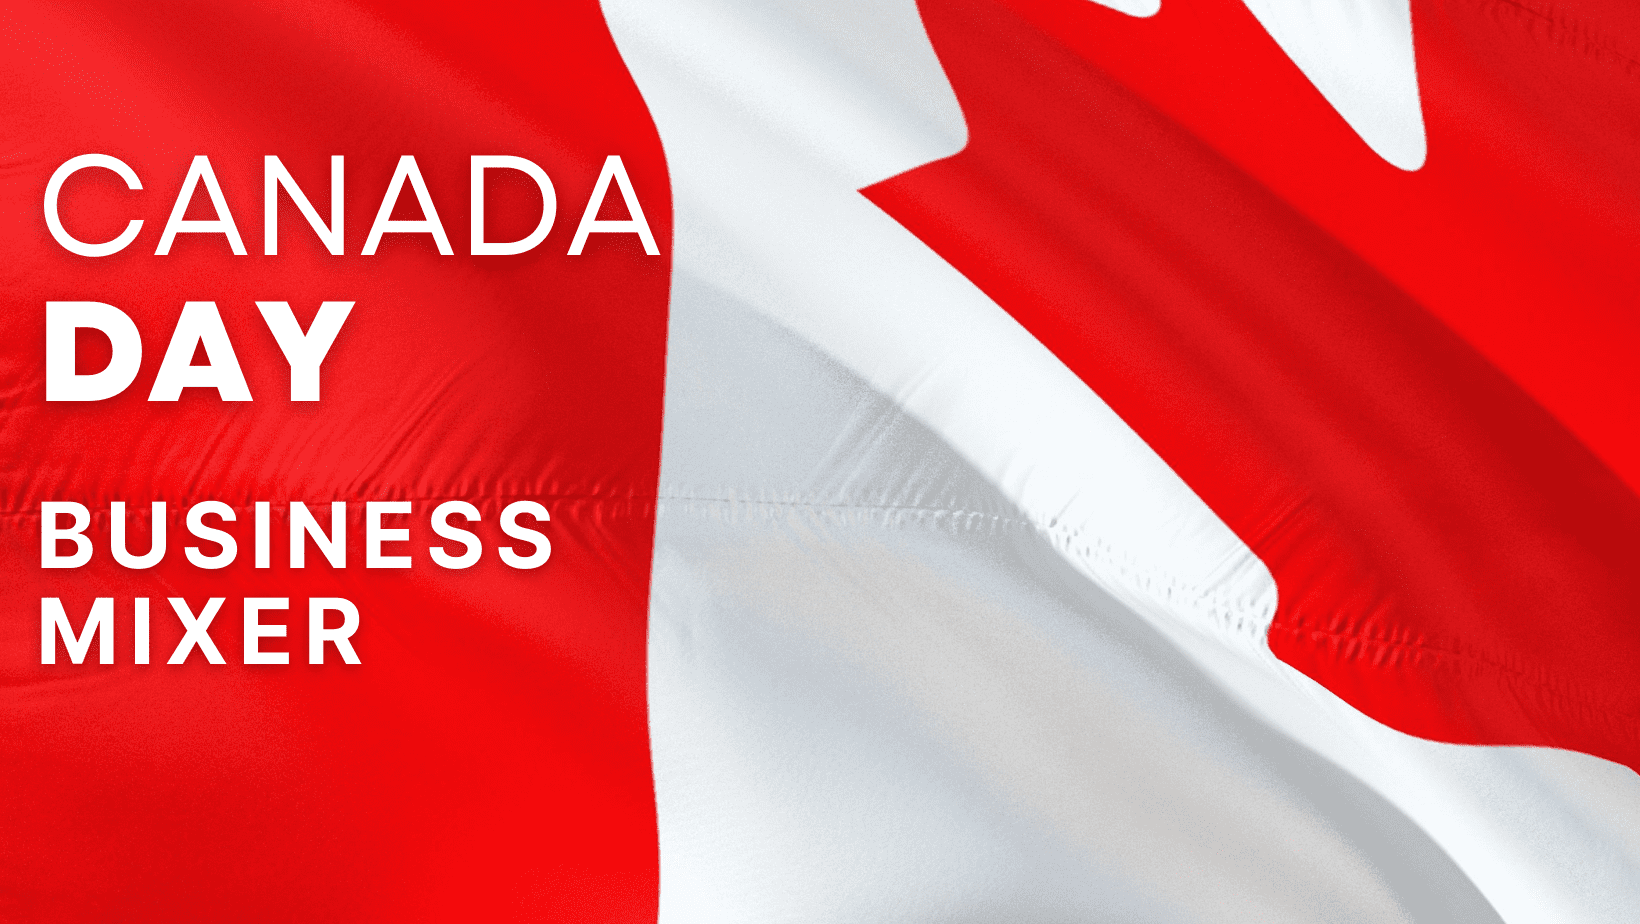 Celebrating Canada Day in Tandem